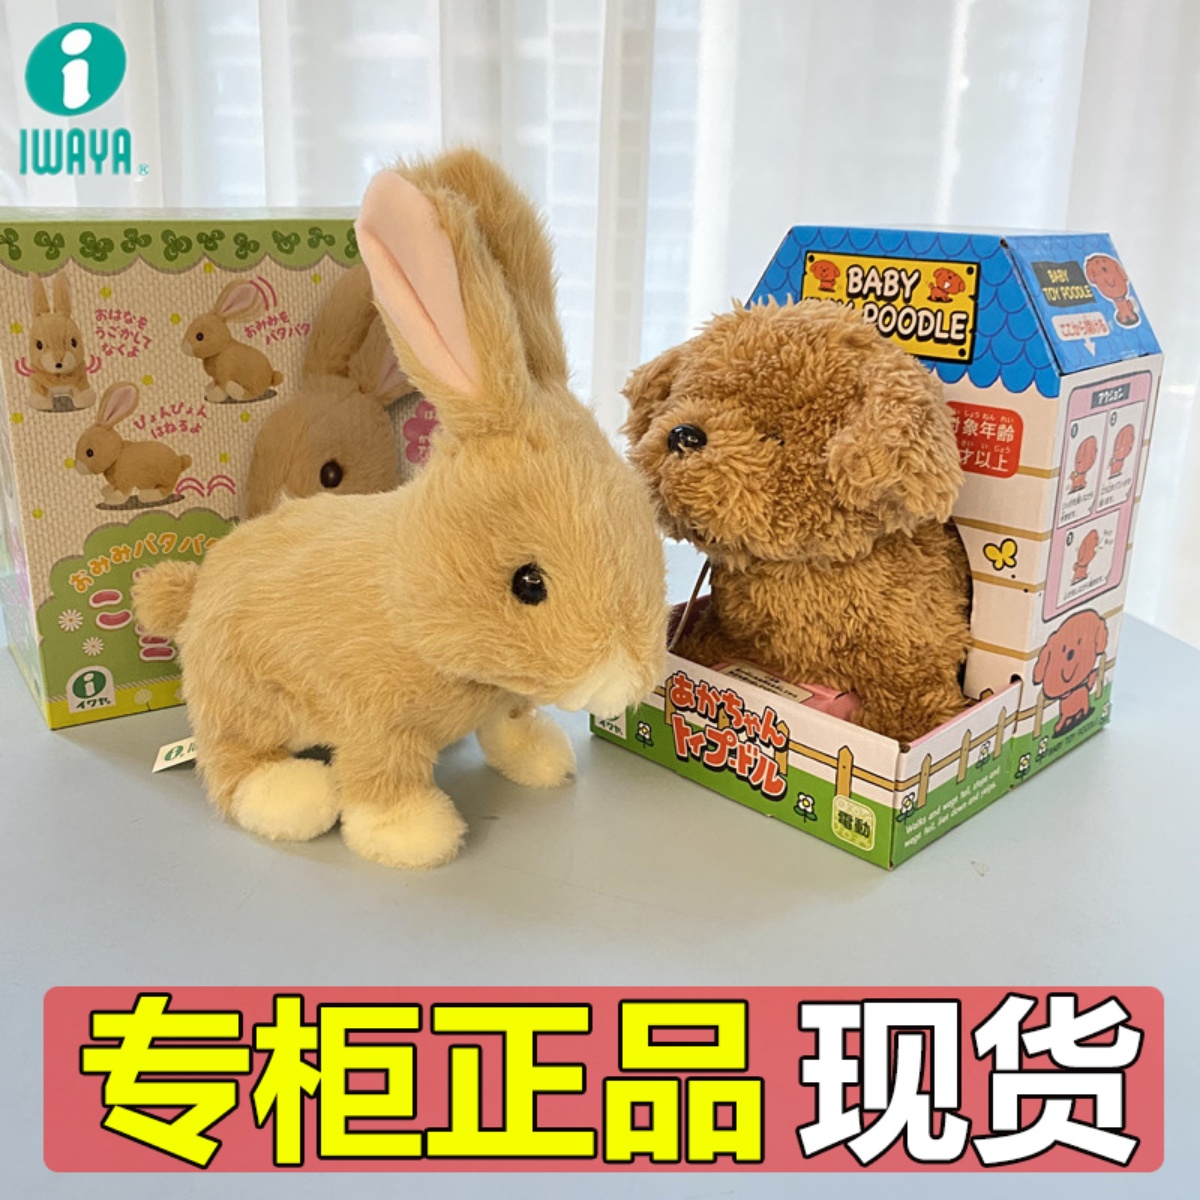 【正品】iwaya日本电动小狗小兔子仿真毛绒宠物玩具狗波斯猫咪